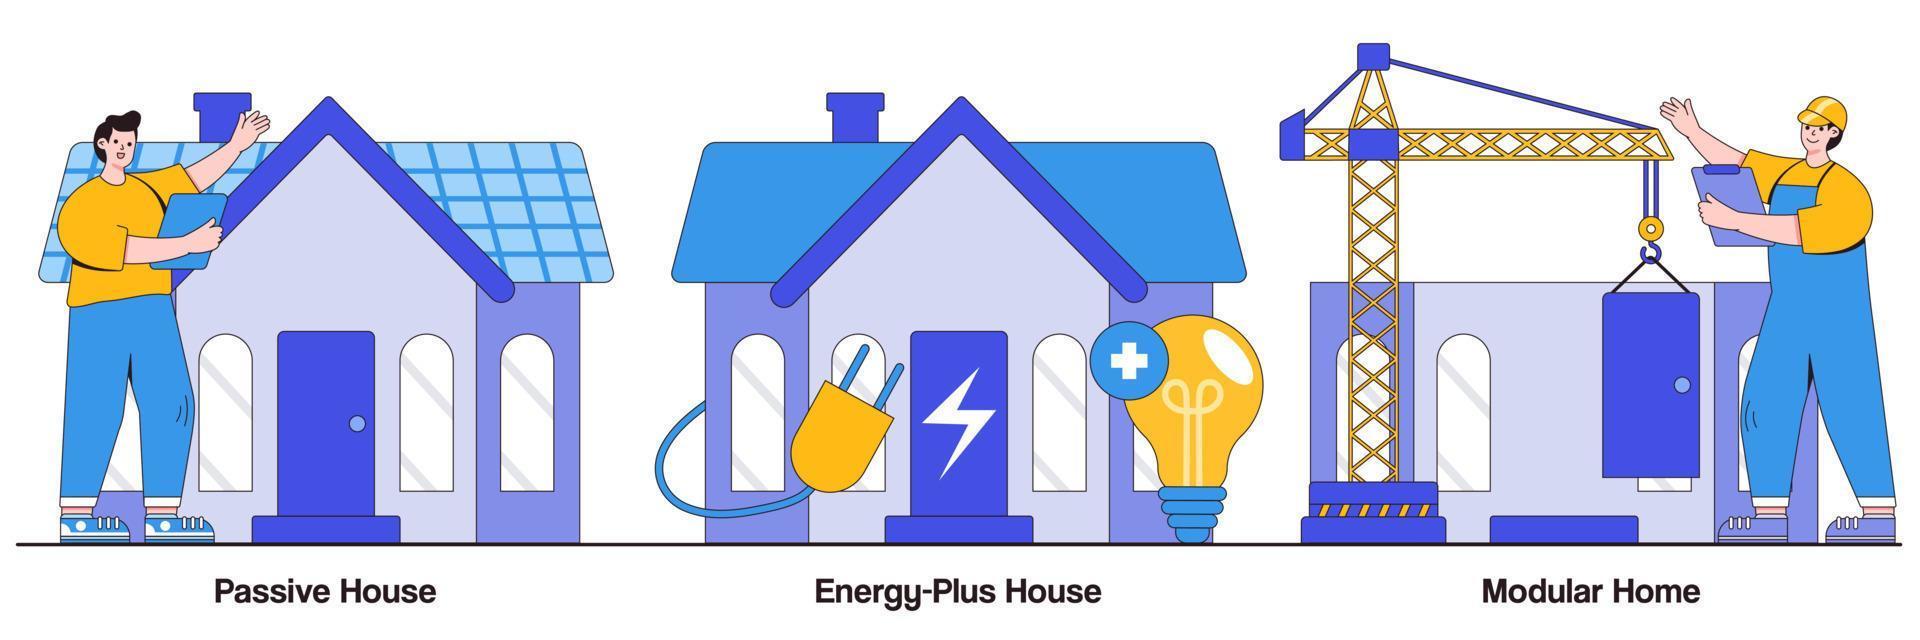 paquete ilustrado de casas modulares, pasivas y de energía plus vector